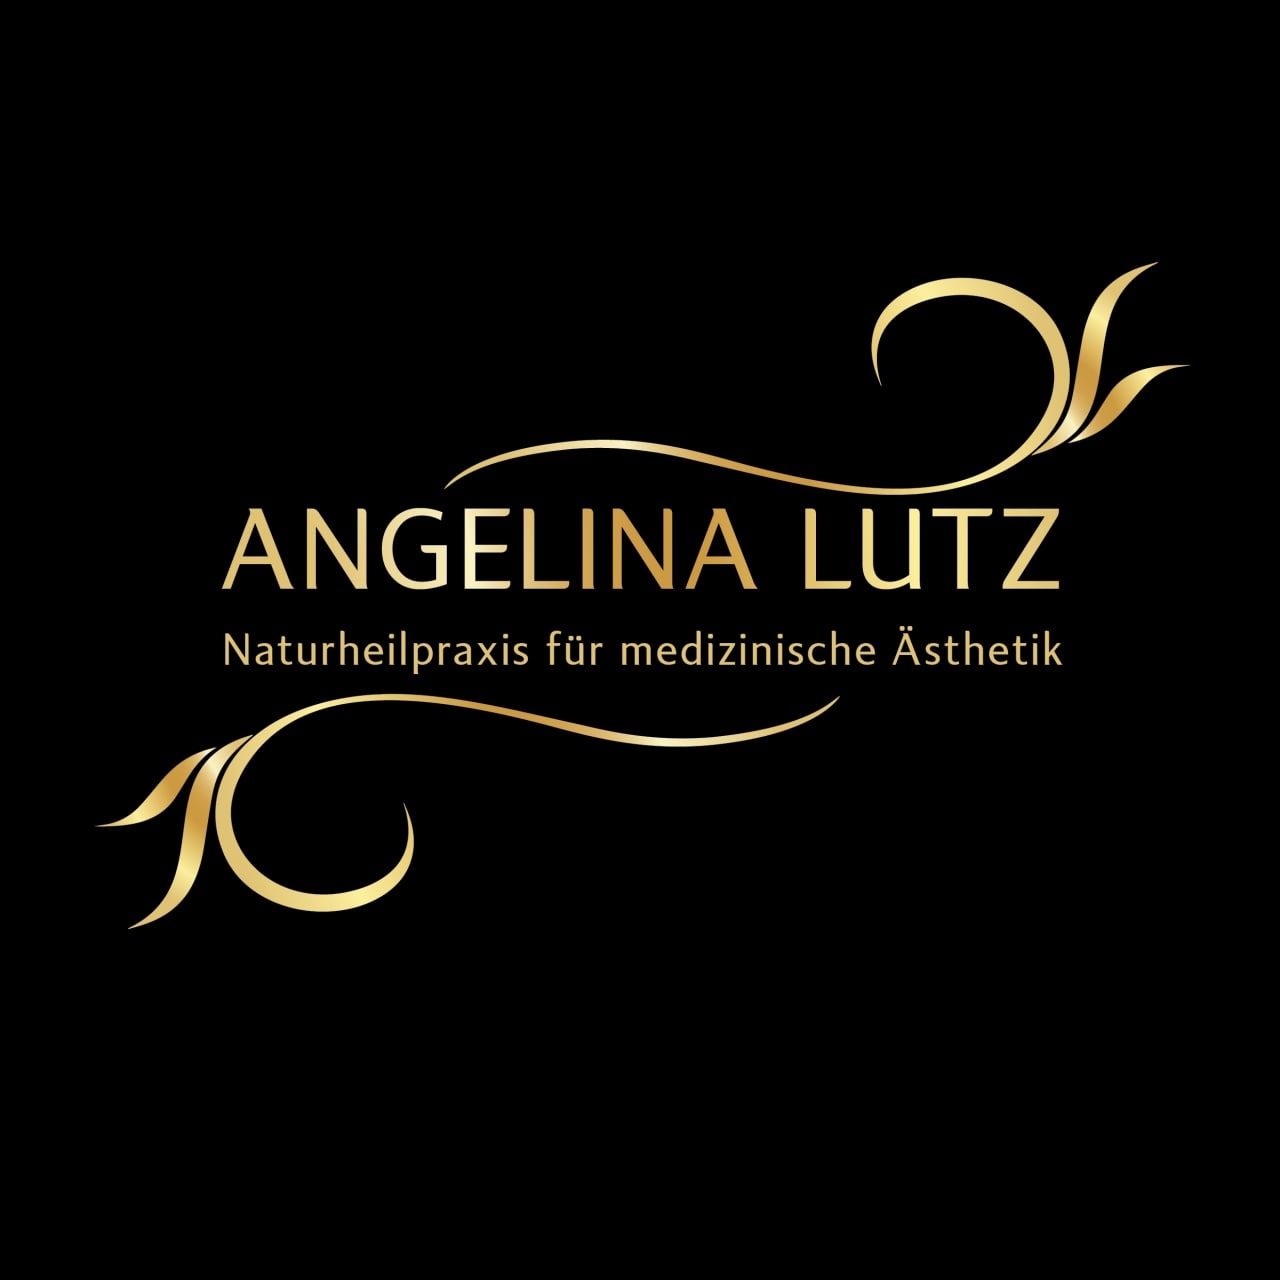 Angelina Lutz - Naturheilpraxis für Osteopathie und medizinische Ästhetik logo